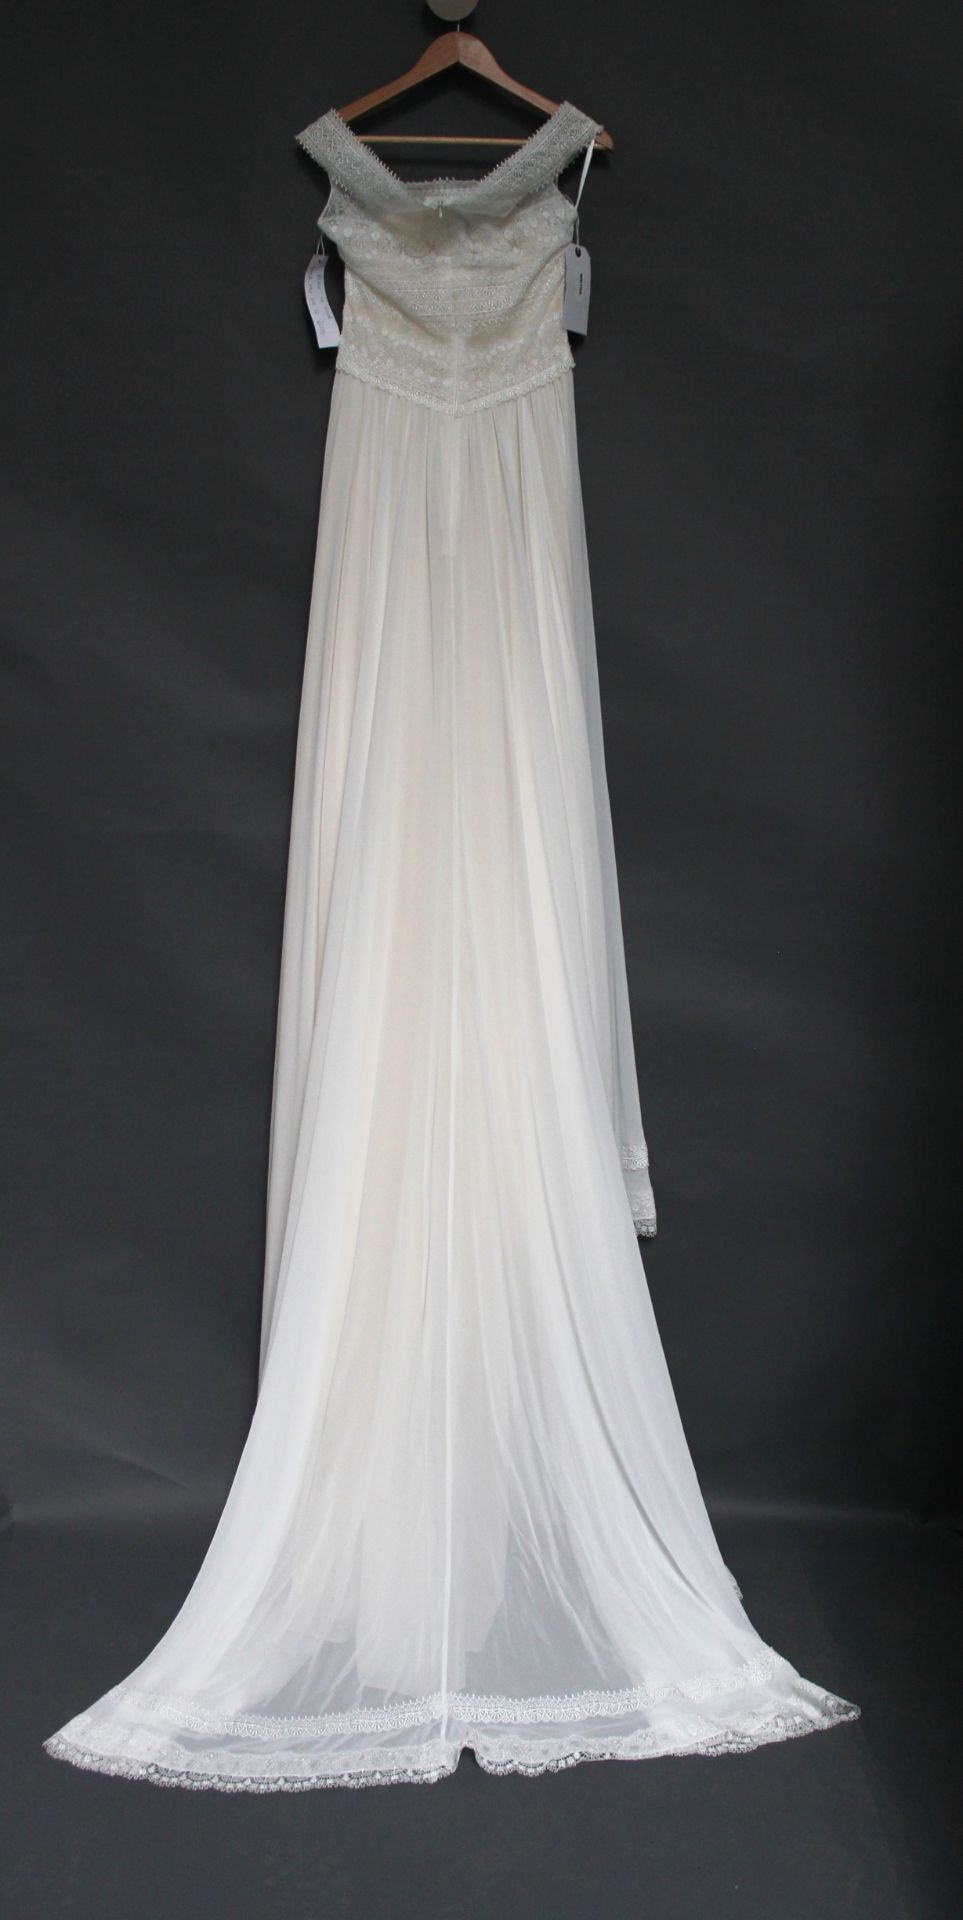 1 x DIANE LE GRAND Lace Off The Shoulder Designer Wedding Dress RRP £1,400 UK10 - Image 2 of 6